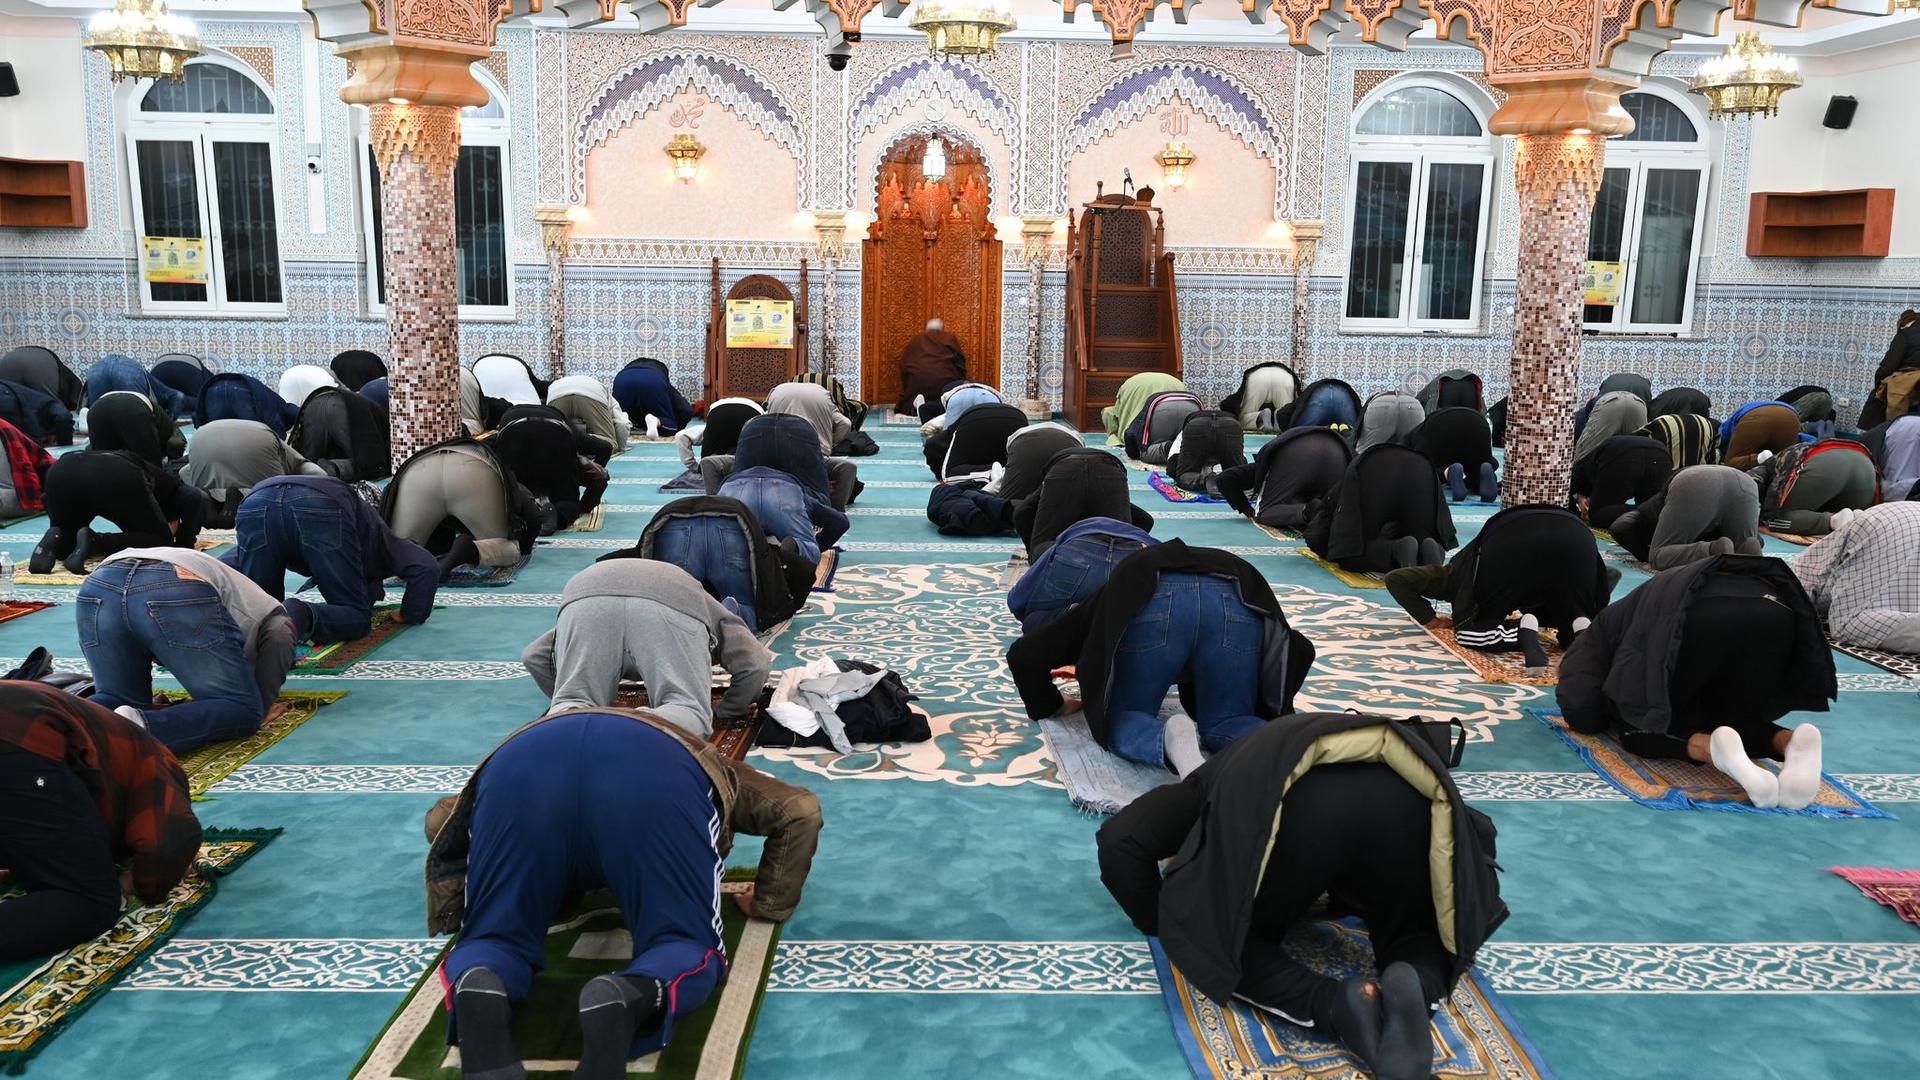 Nachtgebet in einer Moschee in Frankfurt am Main. 82 Prozent der Muslime in Deutschland halten sich laut der Studie für stark oder eher religiös.